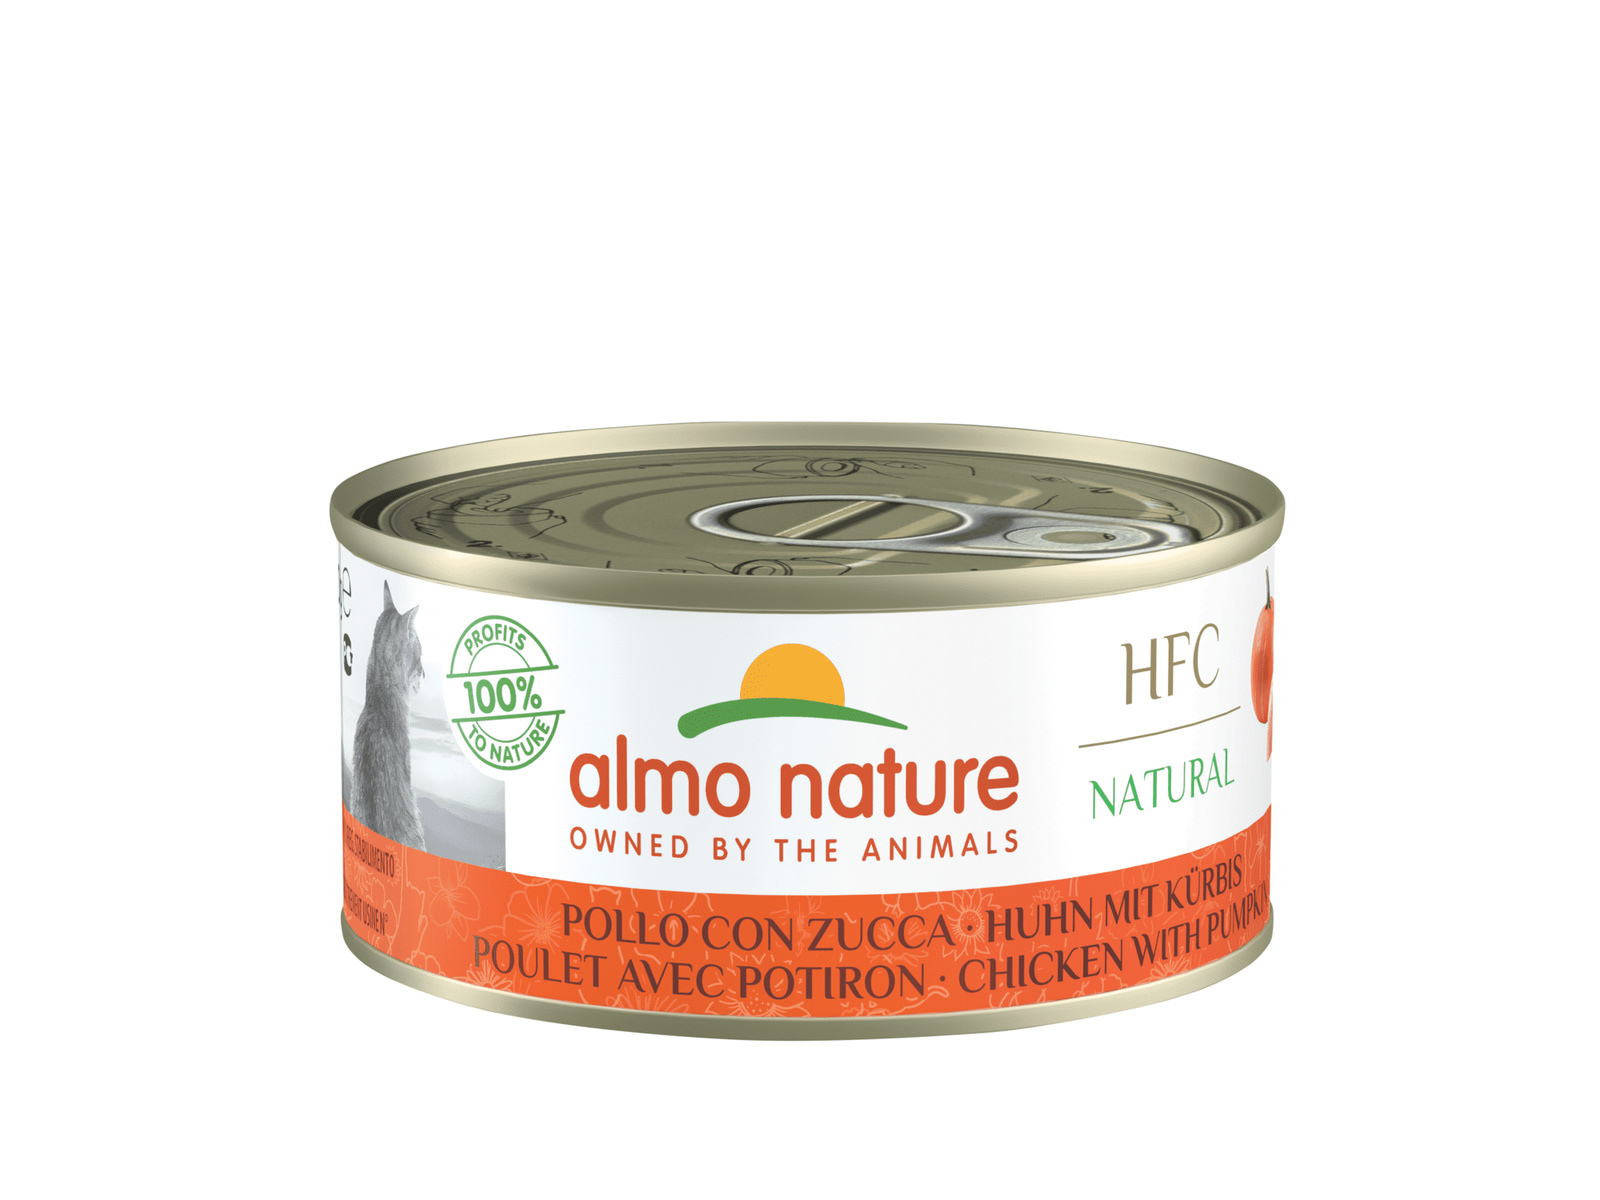 Almo Nature консервы Almo Nature консервы для кошек, с курицей и тыквой, 55% мяса (1 шт., 150 г)